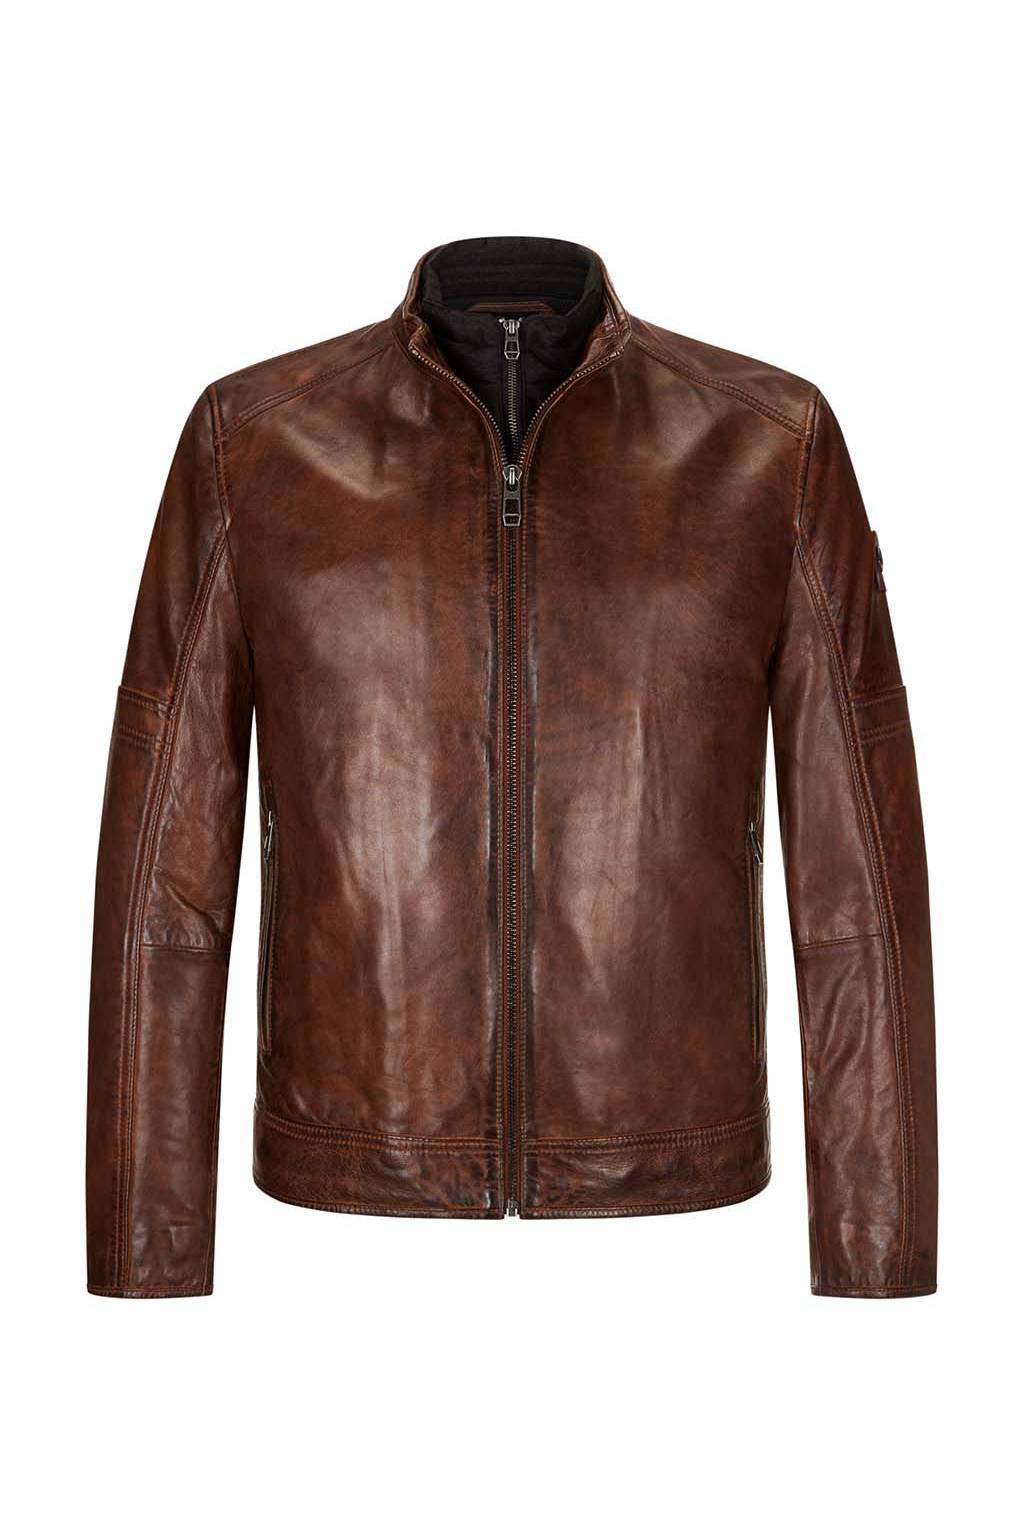 Milestone - Nappa Leather Jacket, Brown